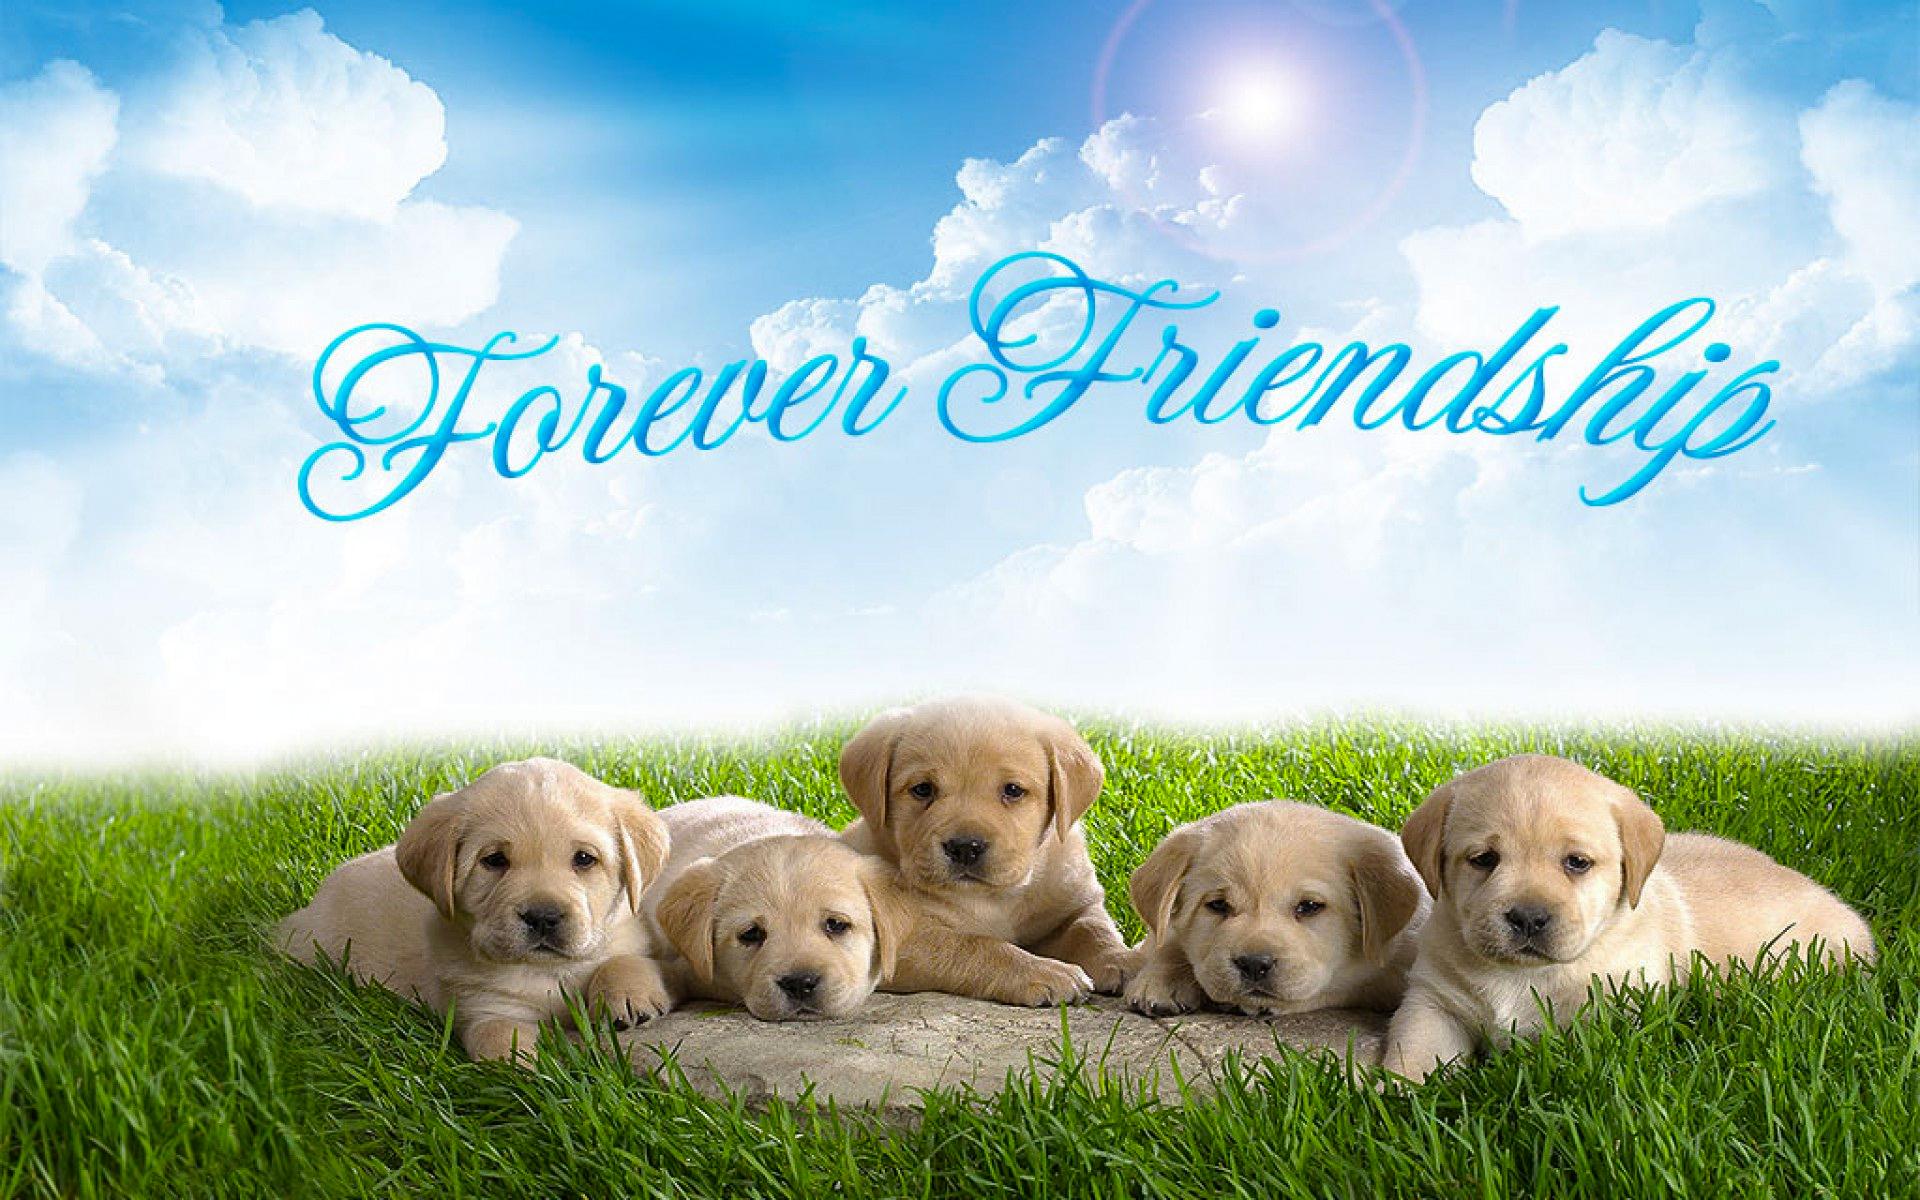 HD Best Friends Forever Backgrounds | PixelsTalk.Net